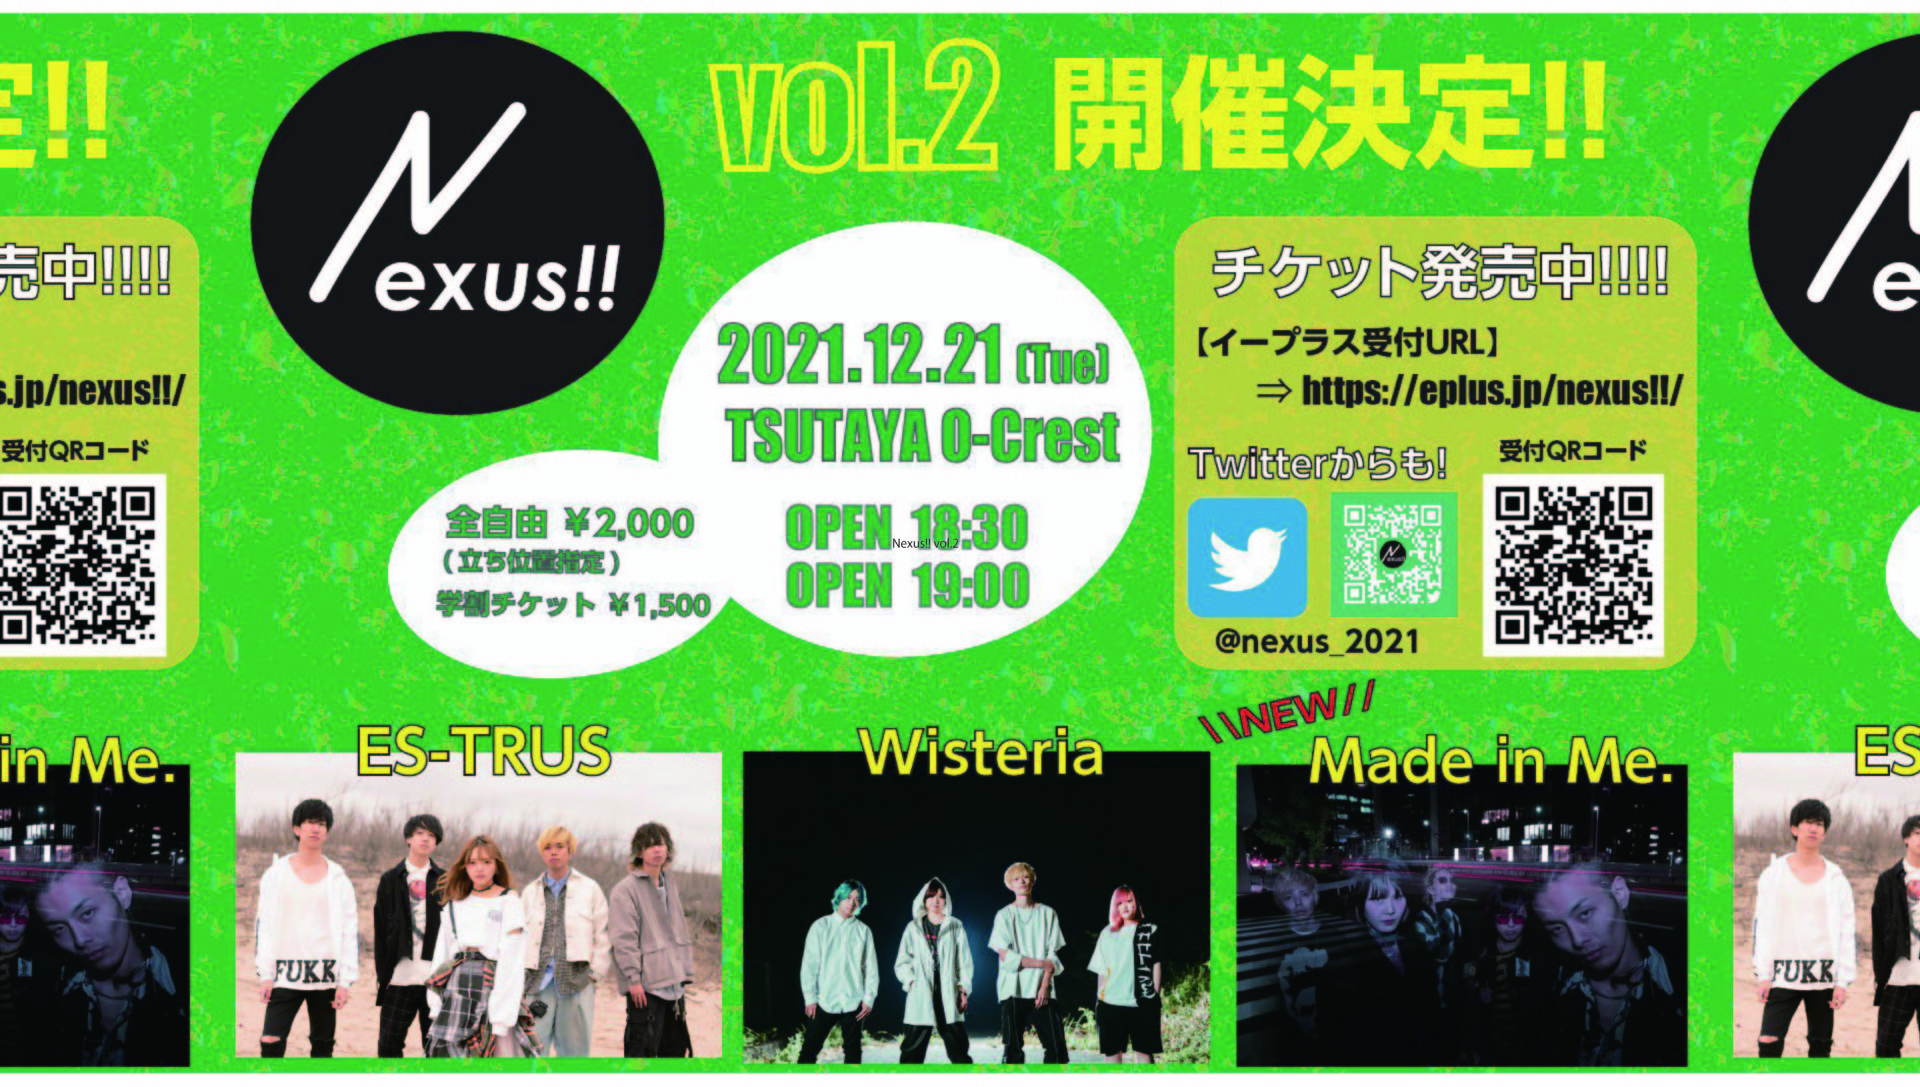 Nexus!! vol.2